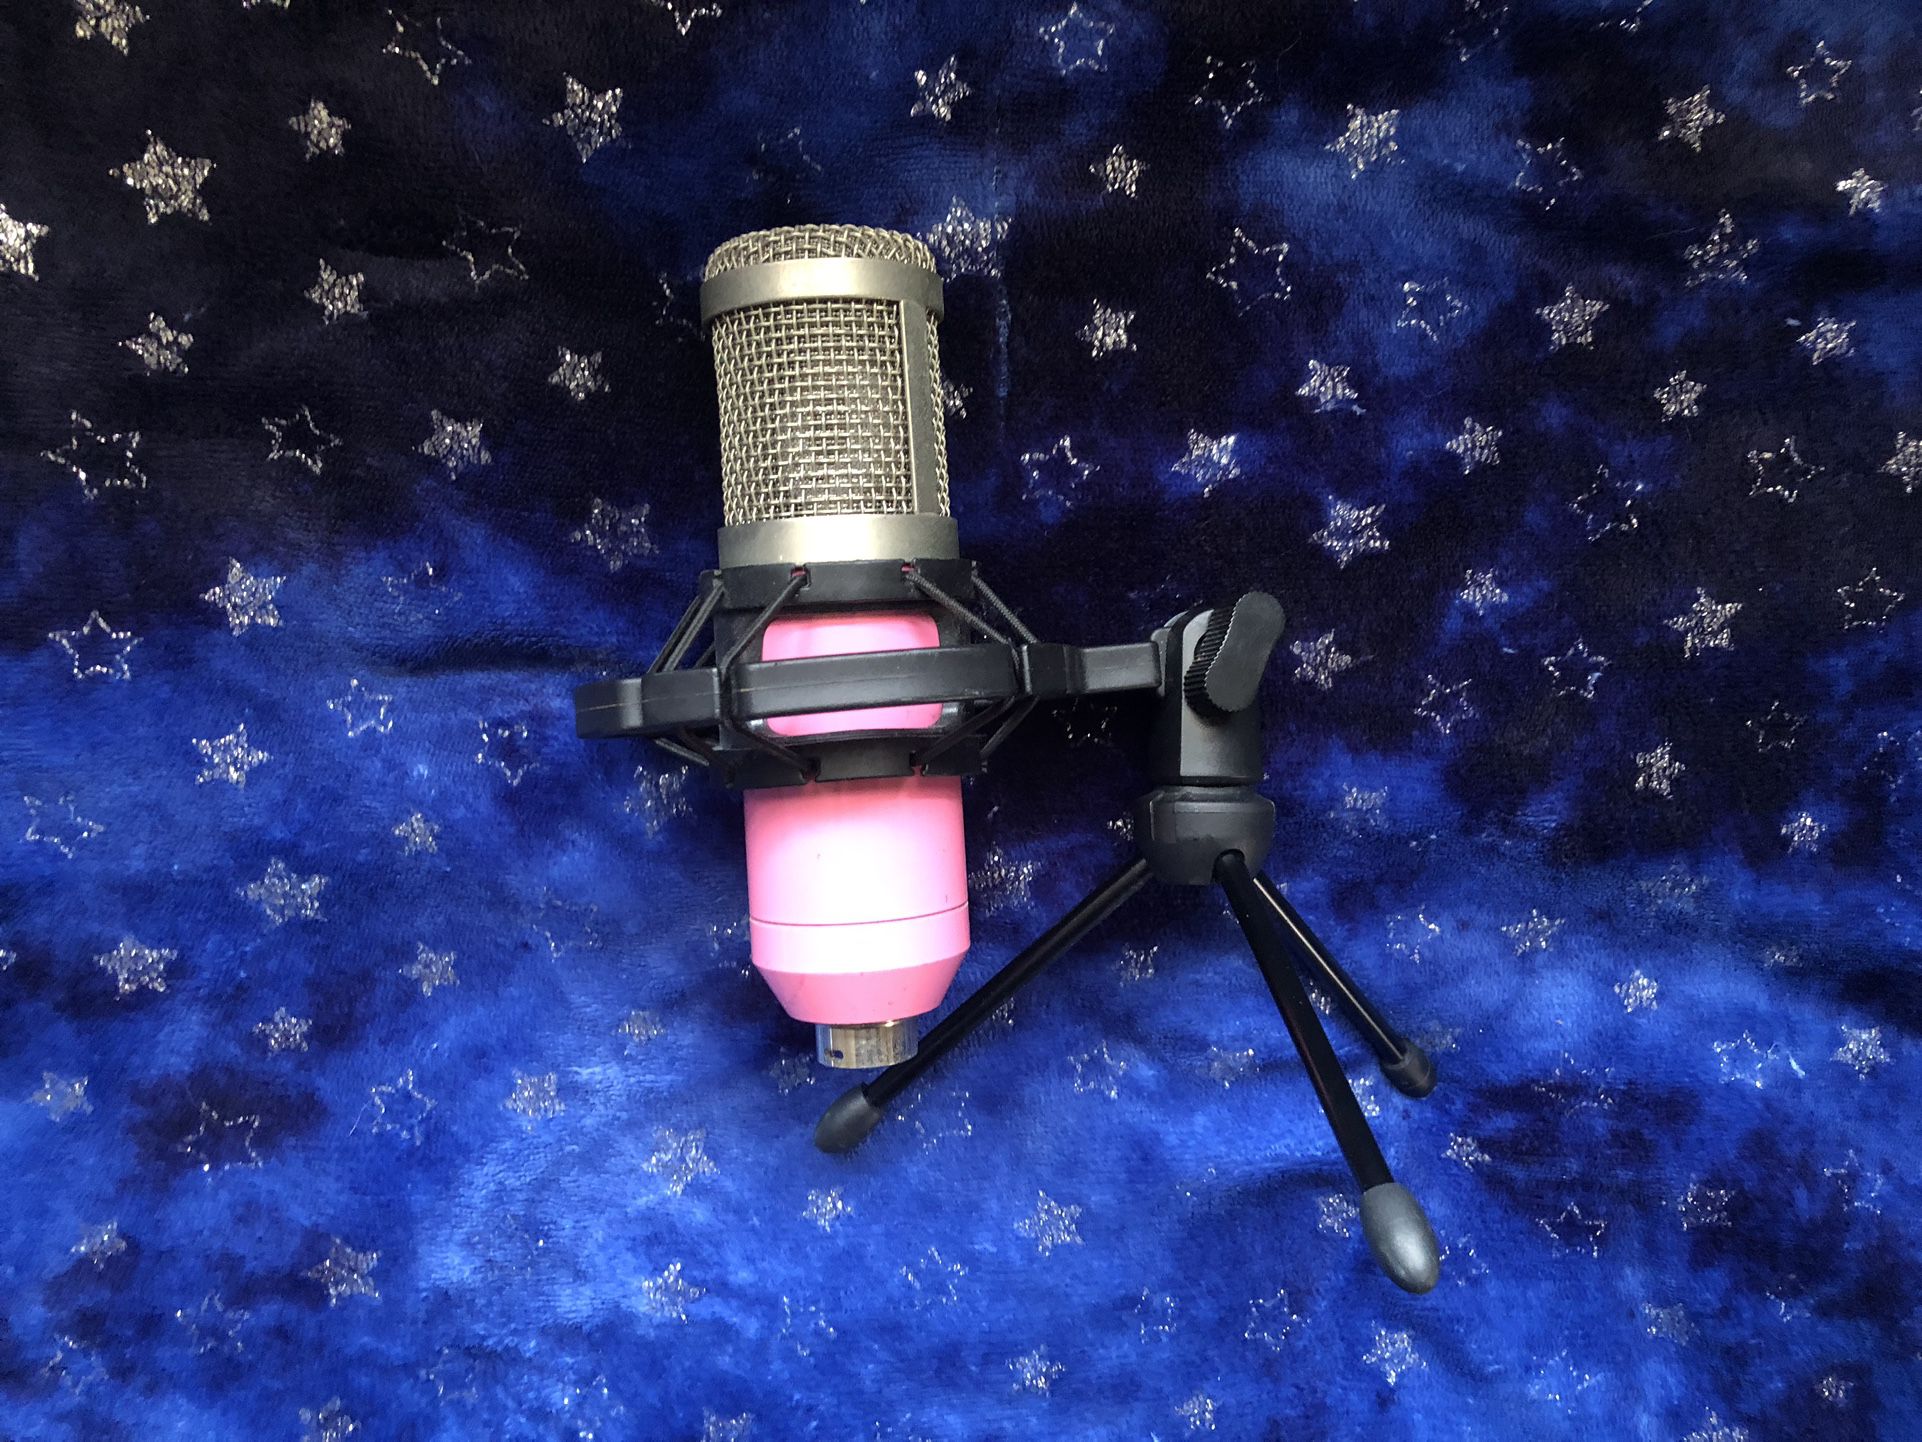 Condenser Microphone (PINK)